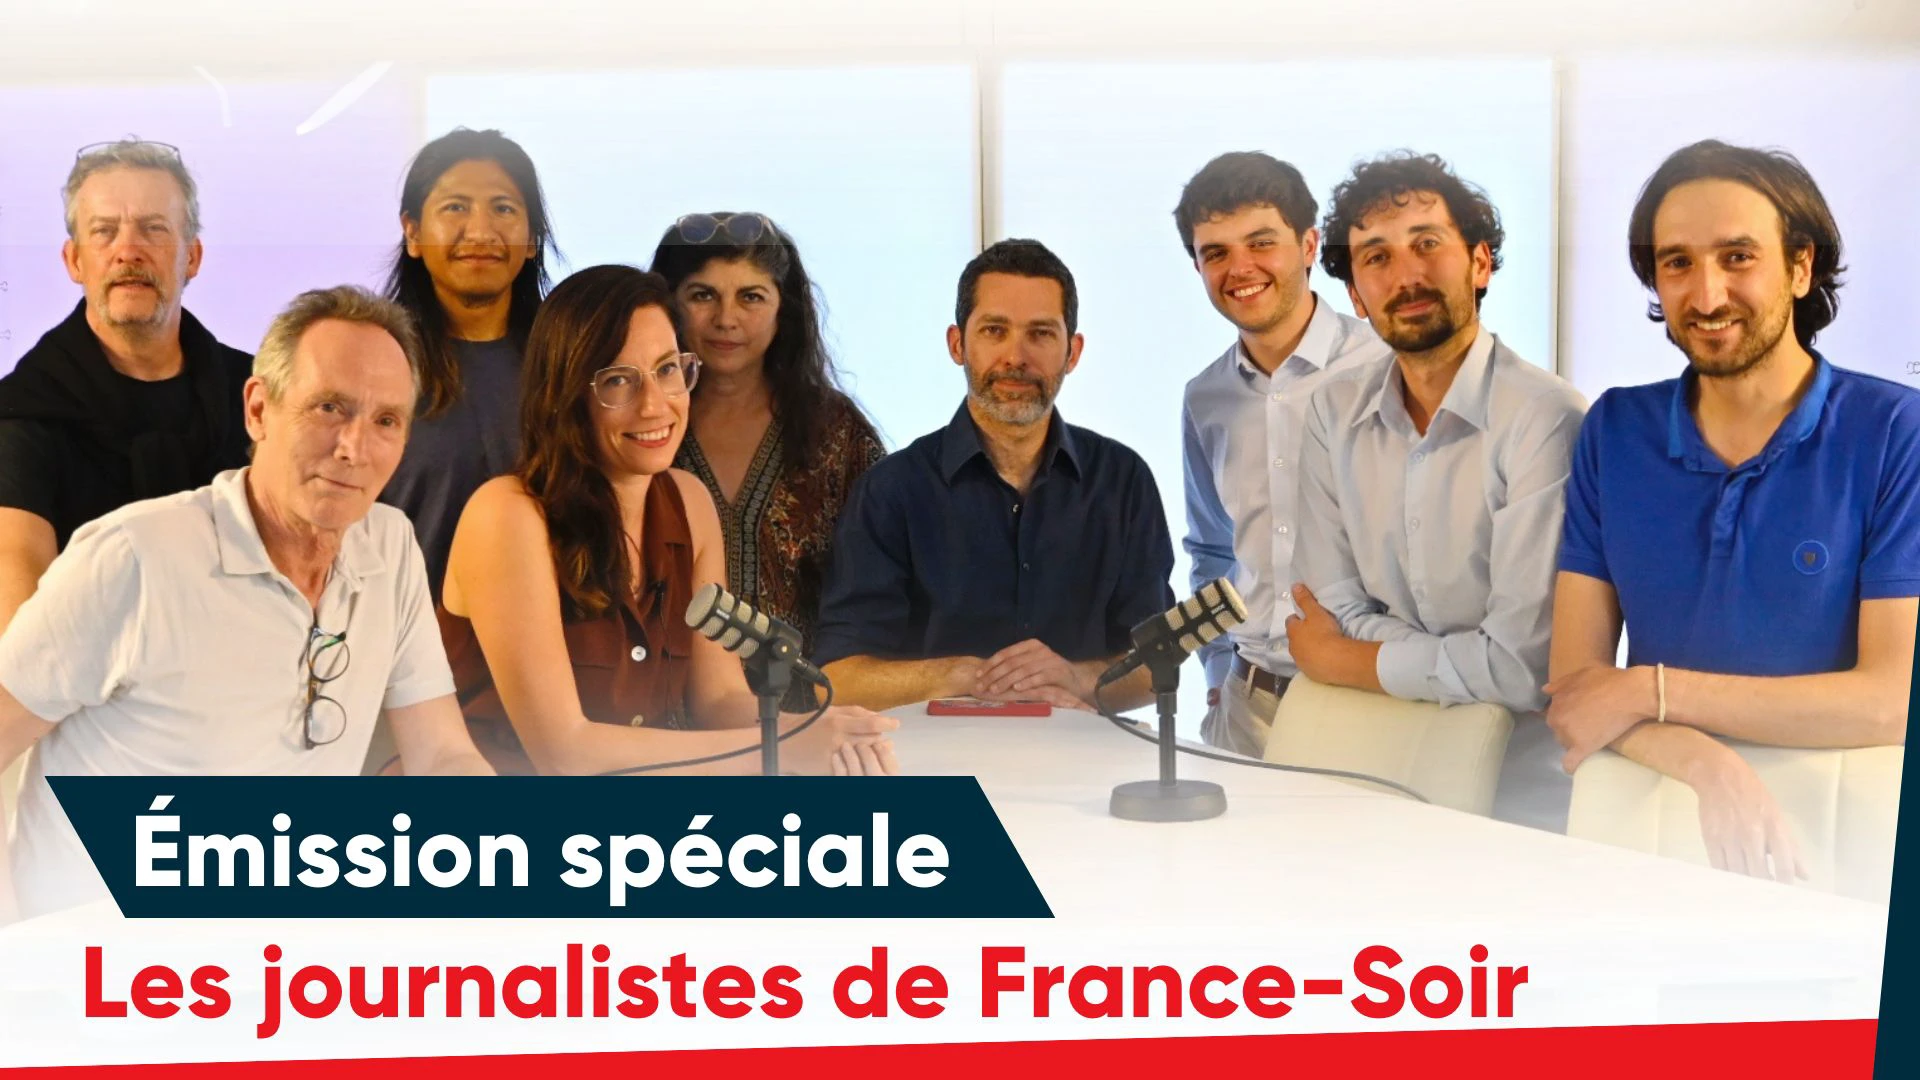 Emission spéciale : Entretien avec les journalistes de France-Soir